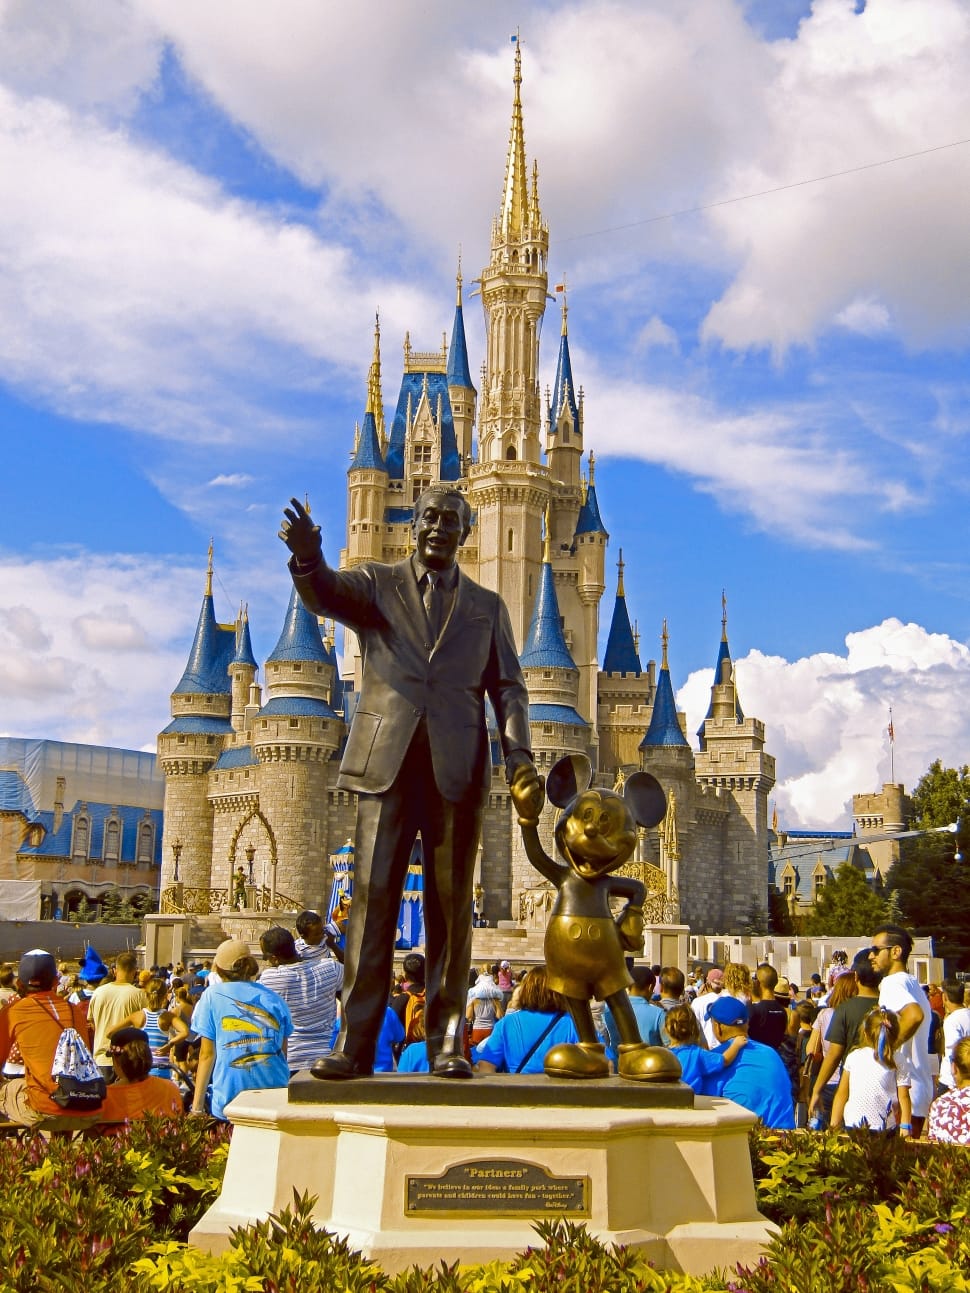 Disney, Kingdom, Magic, Orlando, Florida, statue, architecture preview